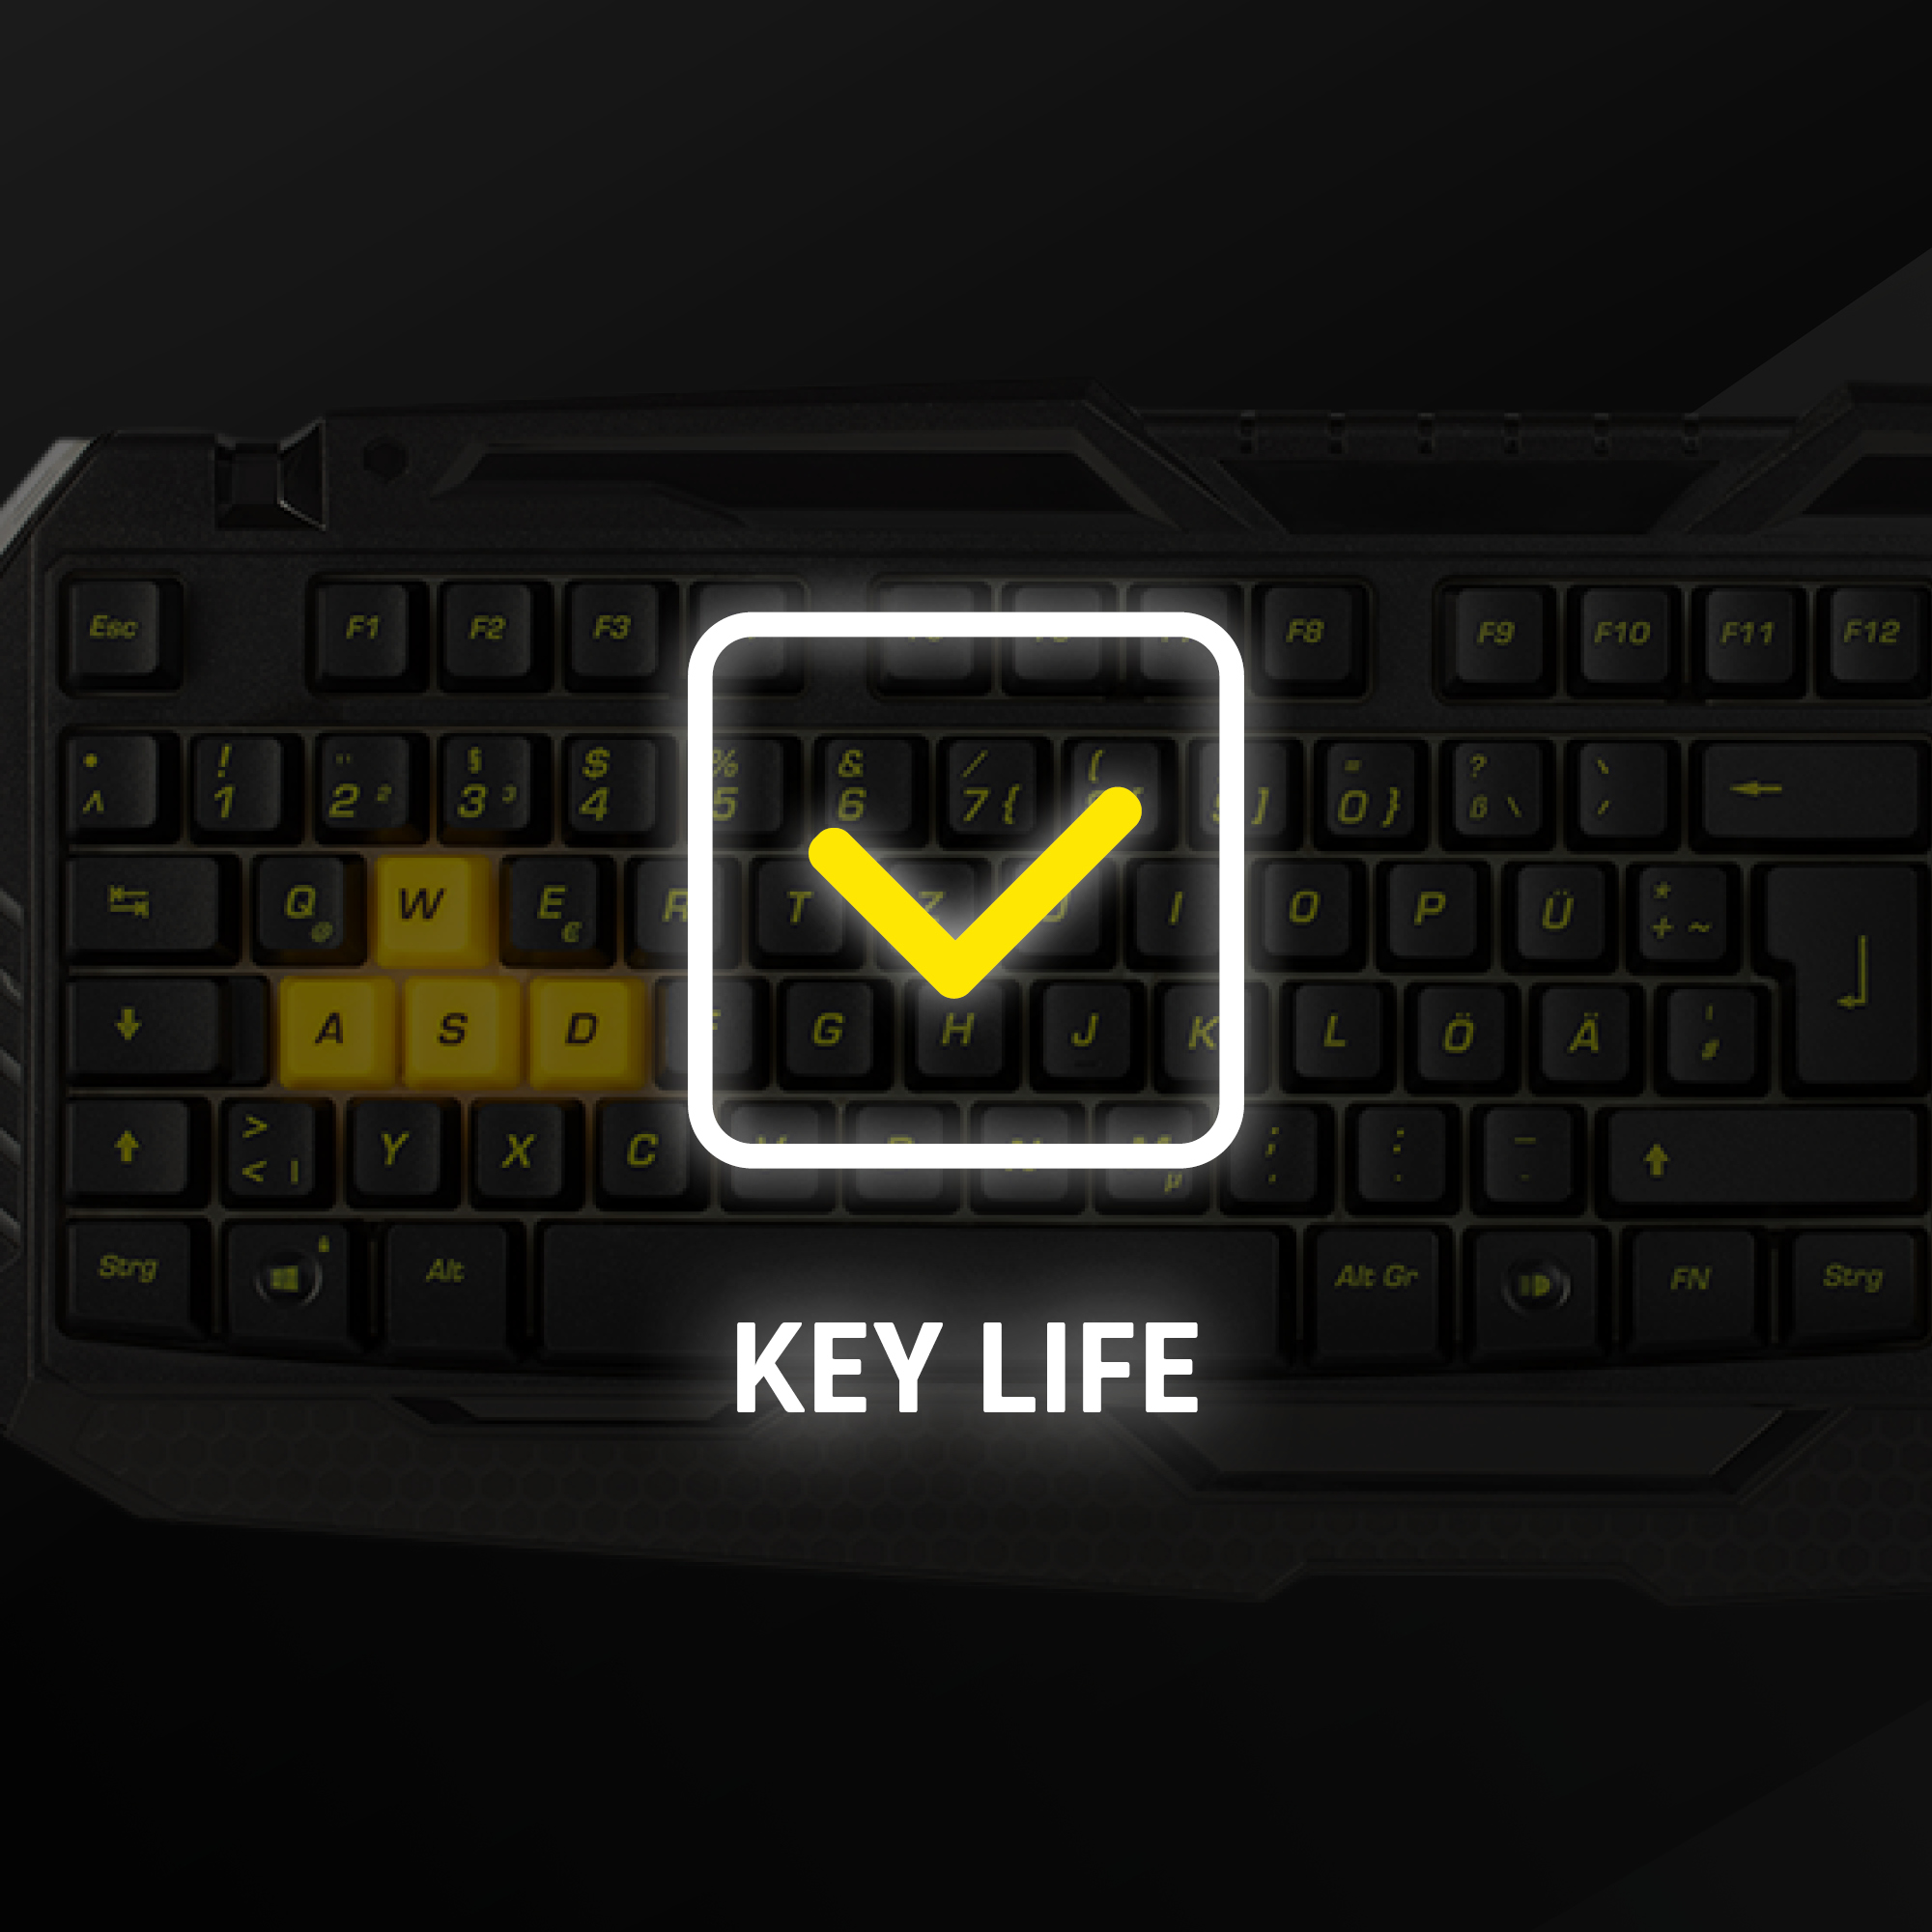 PC Tastatur, Standard Snakebyte Tastatur, BVB-Gaming SNAKEBYTE